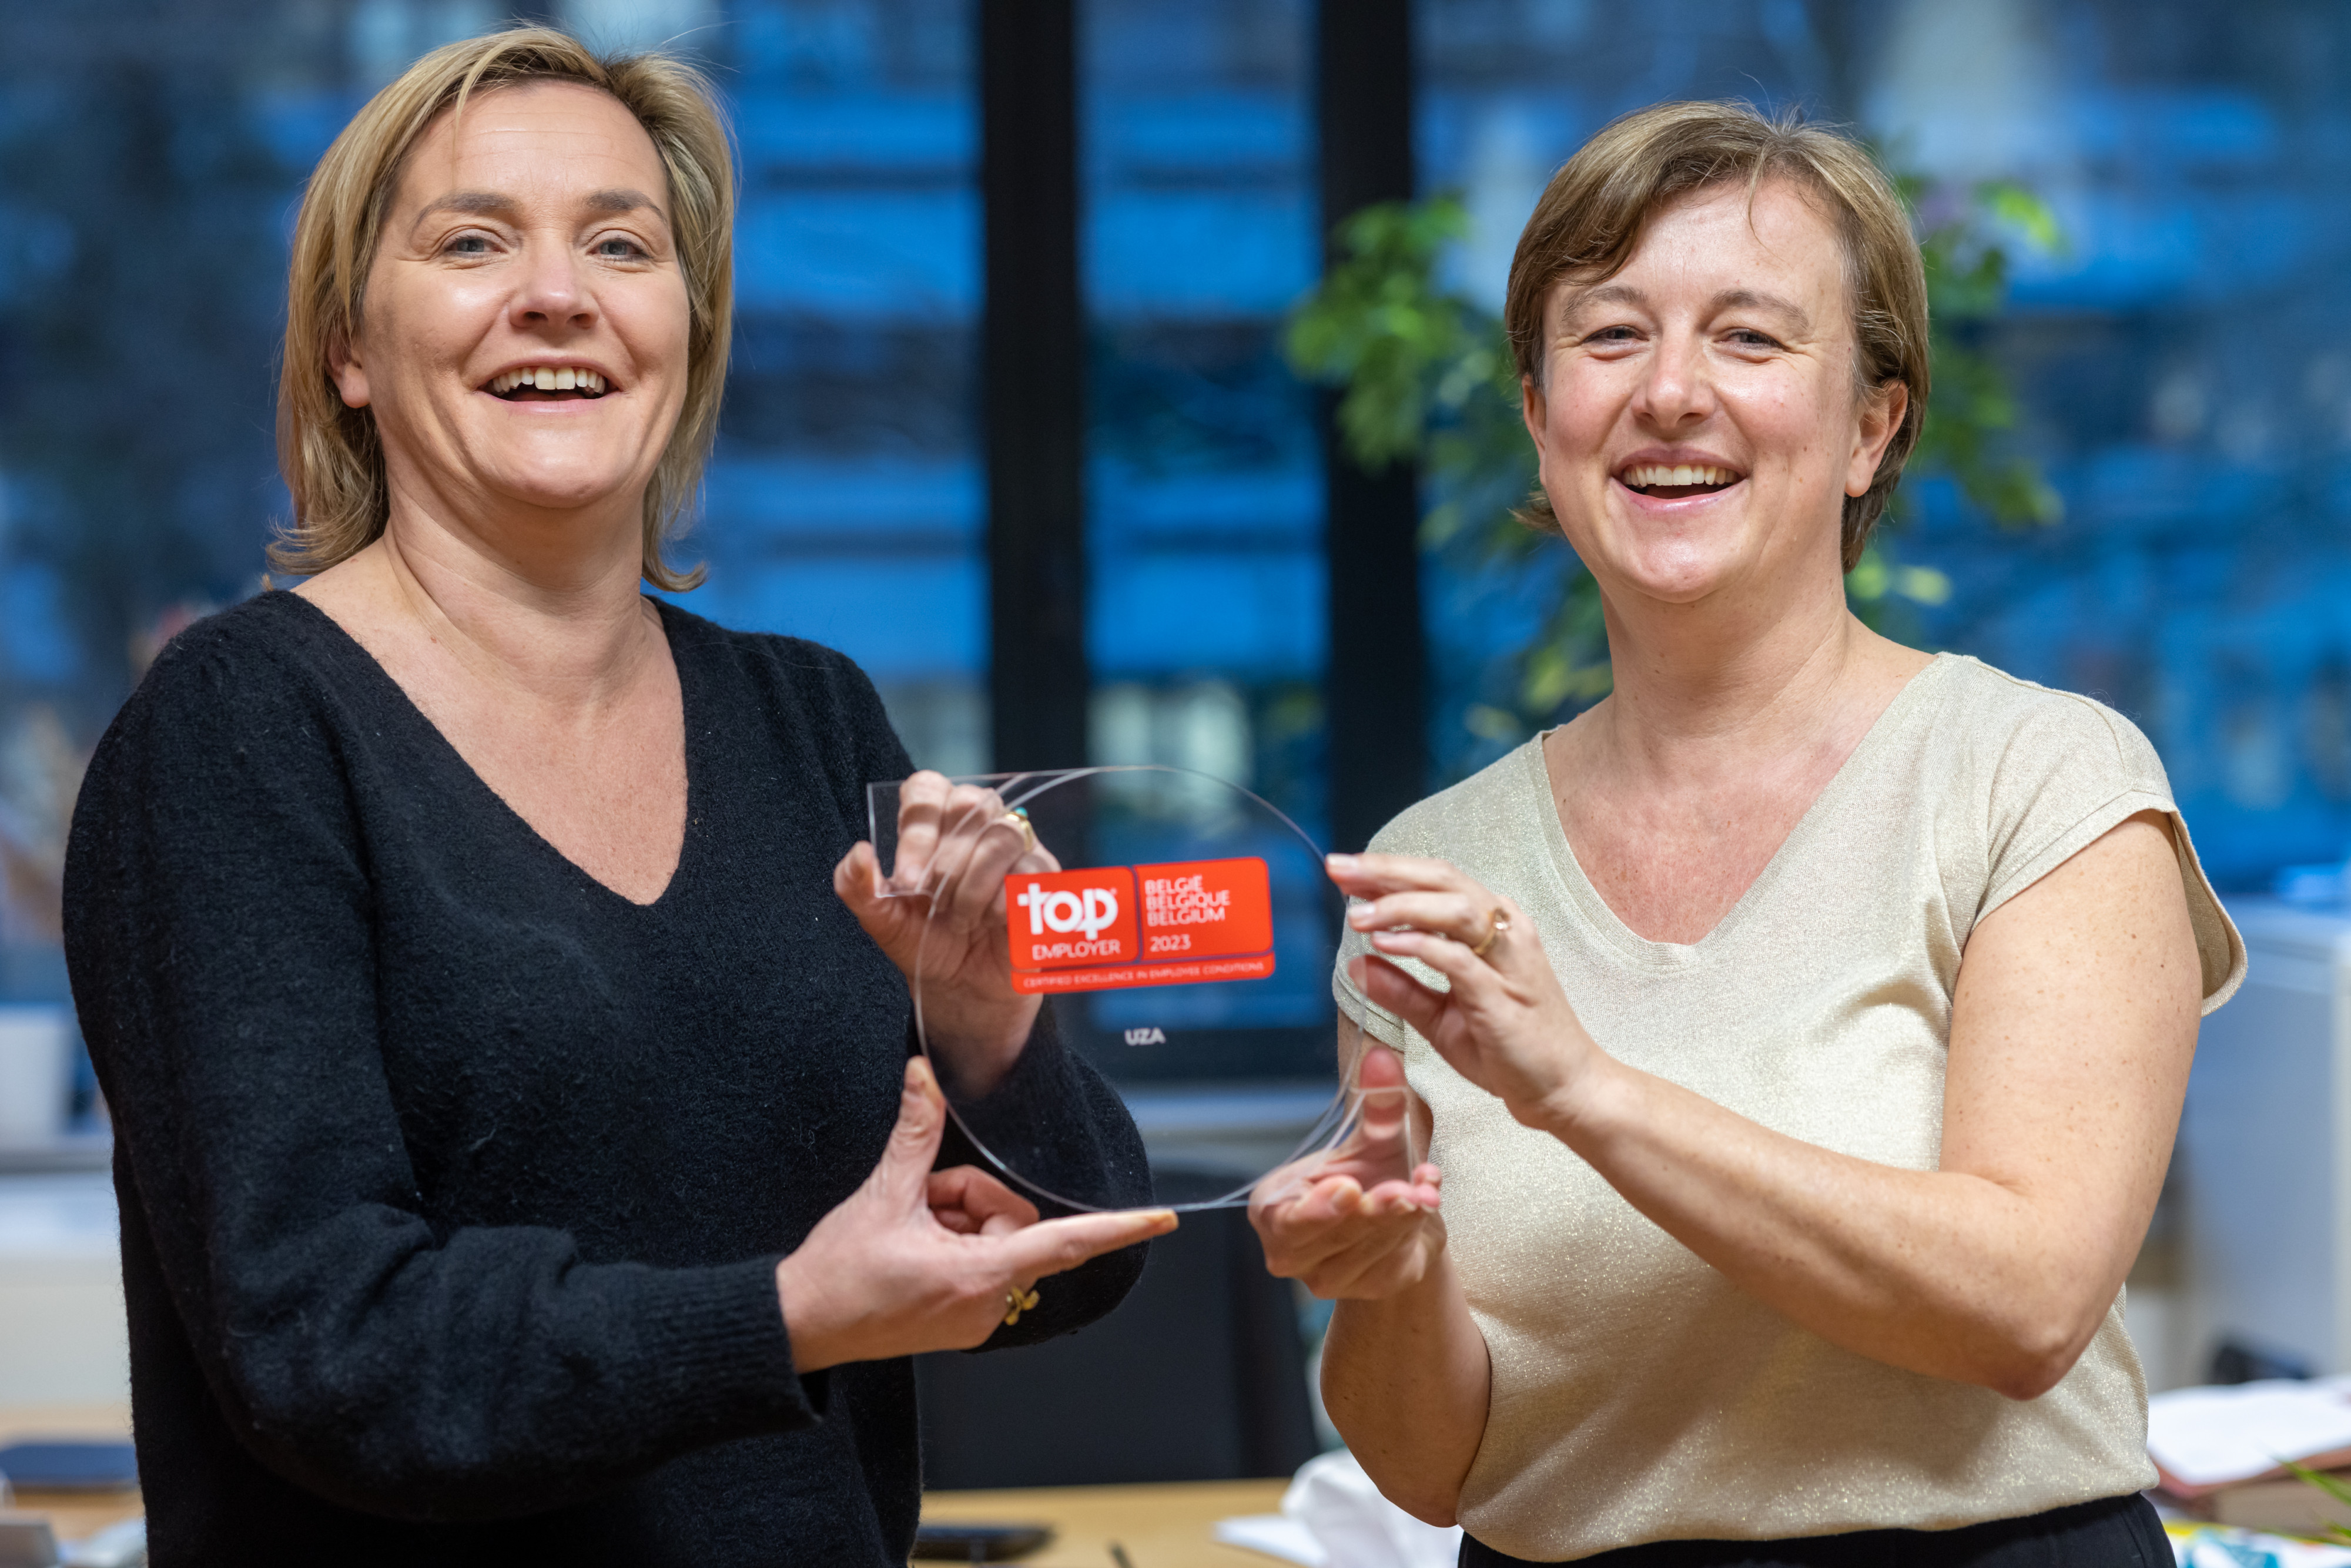 Nieuwe HR-directeur Katleen Janssens en talent coördinator Kathleen Dekeirel met de award van Top Employer